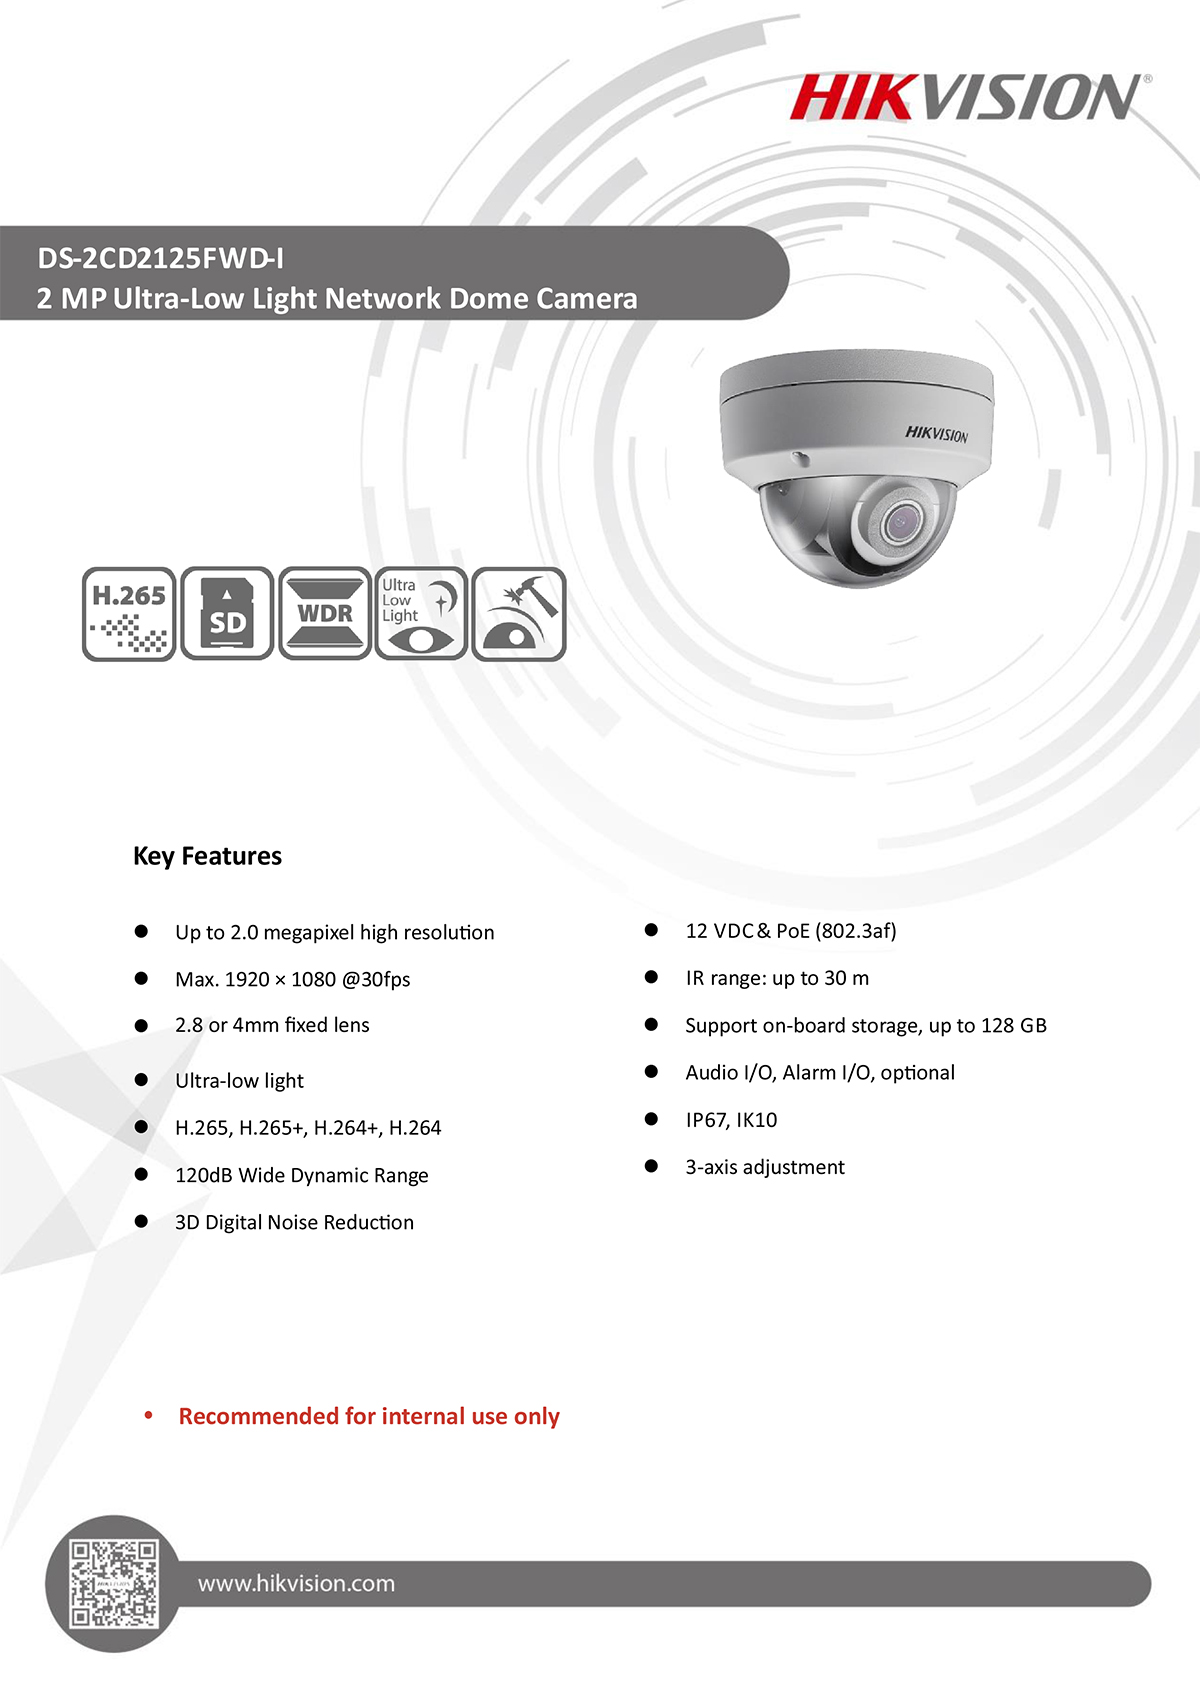 กล้องวงจรปิด CCTV HIKVISION DS-2CD2125FWD-I